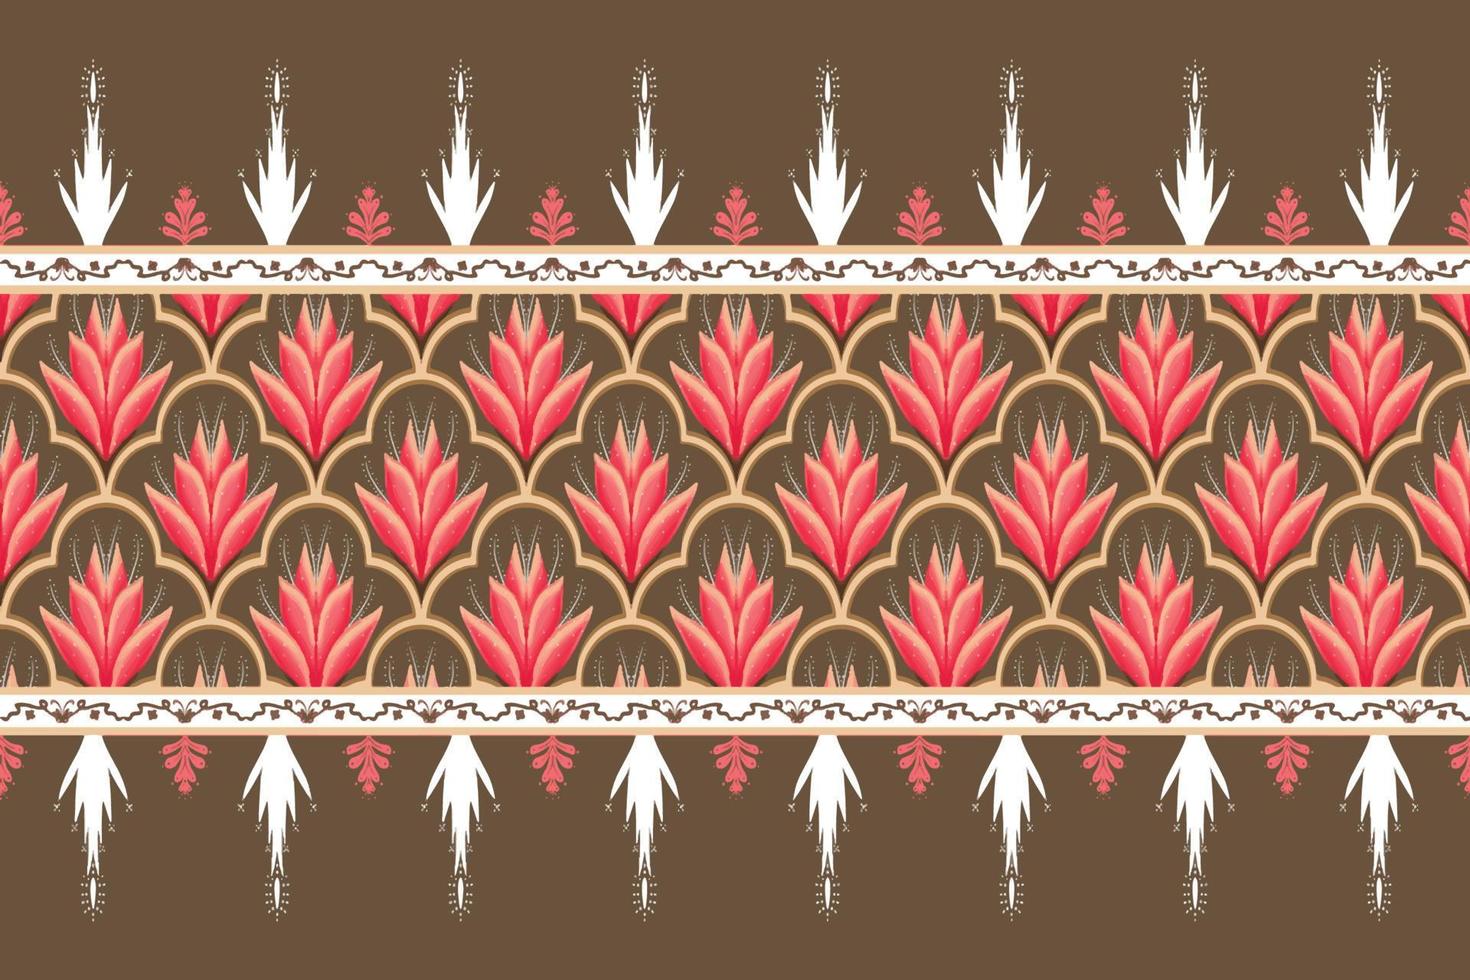 rosa blomma på brunt, vitt geometriskt etniskt orientaliskt mönster traditionell design för bakgrund, matta, tapeter, kläder, omslag, batik, tyg, vektorillustrationbroderistil vektor